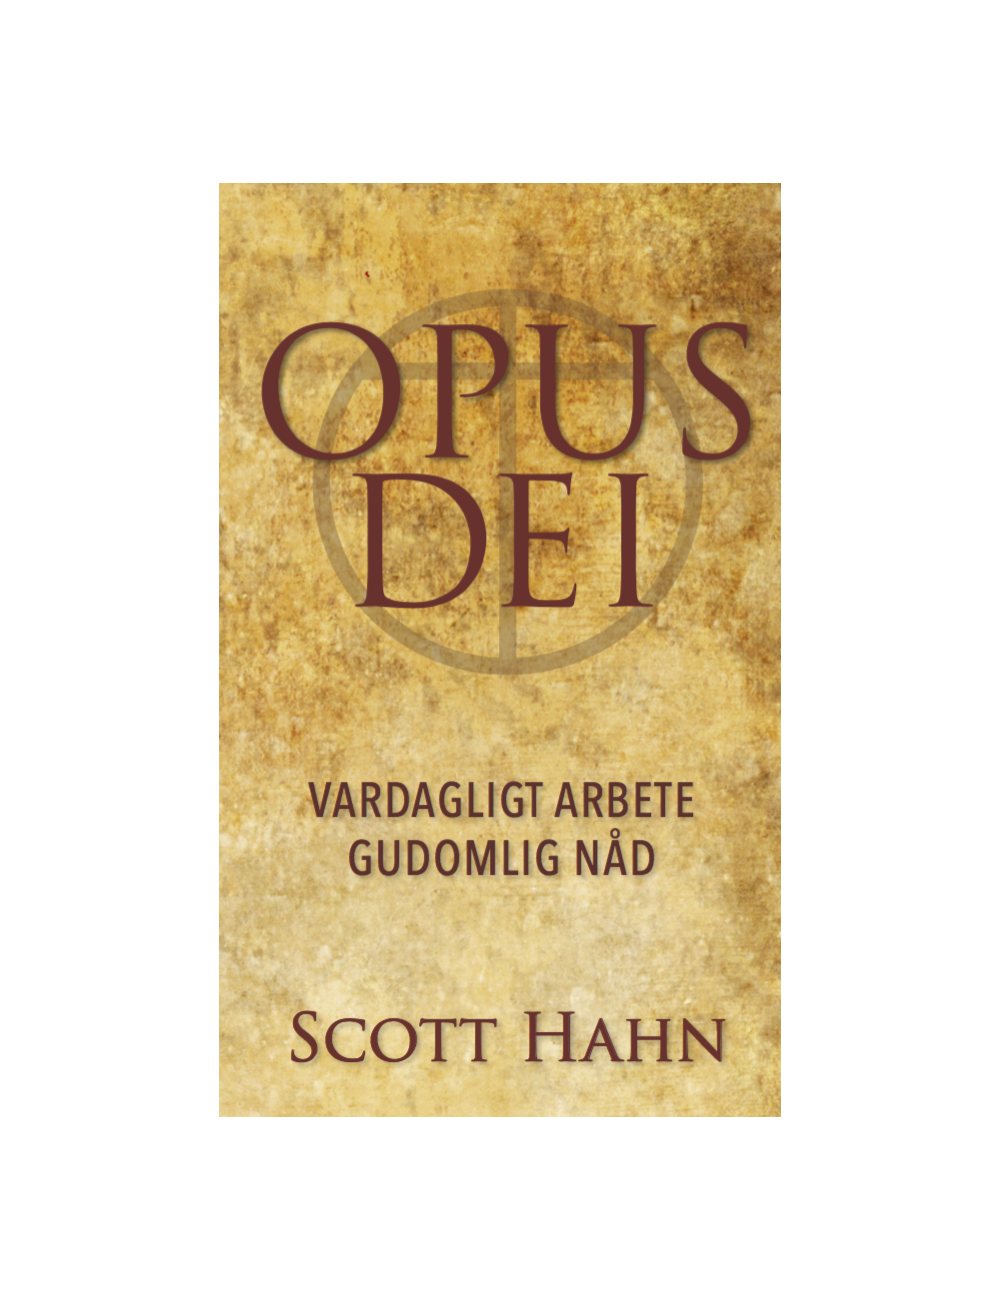 Opus Dei - vardagligt arbete gudomlig nåd